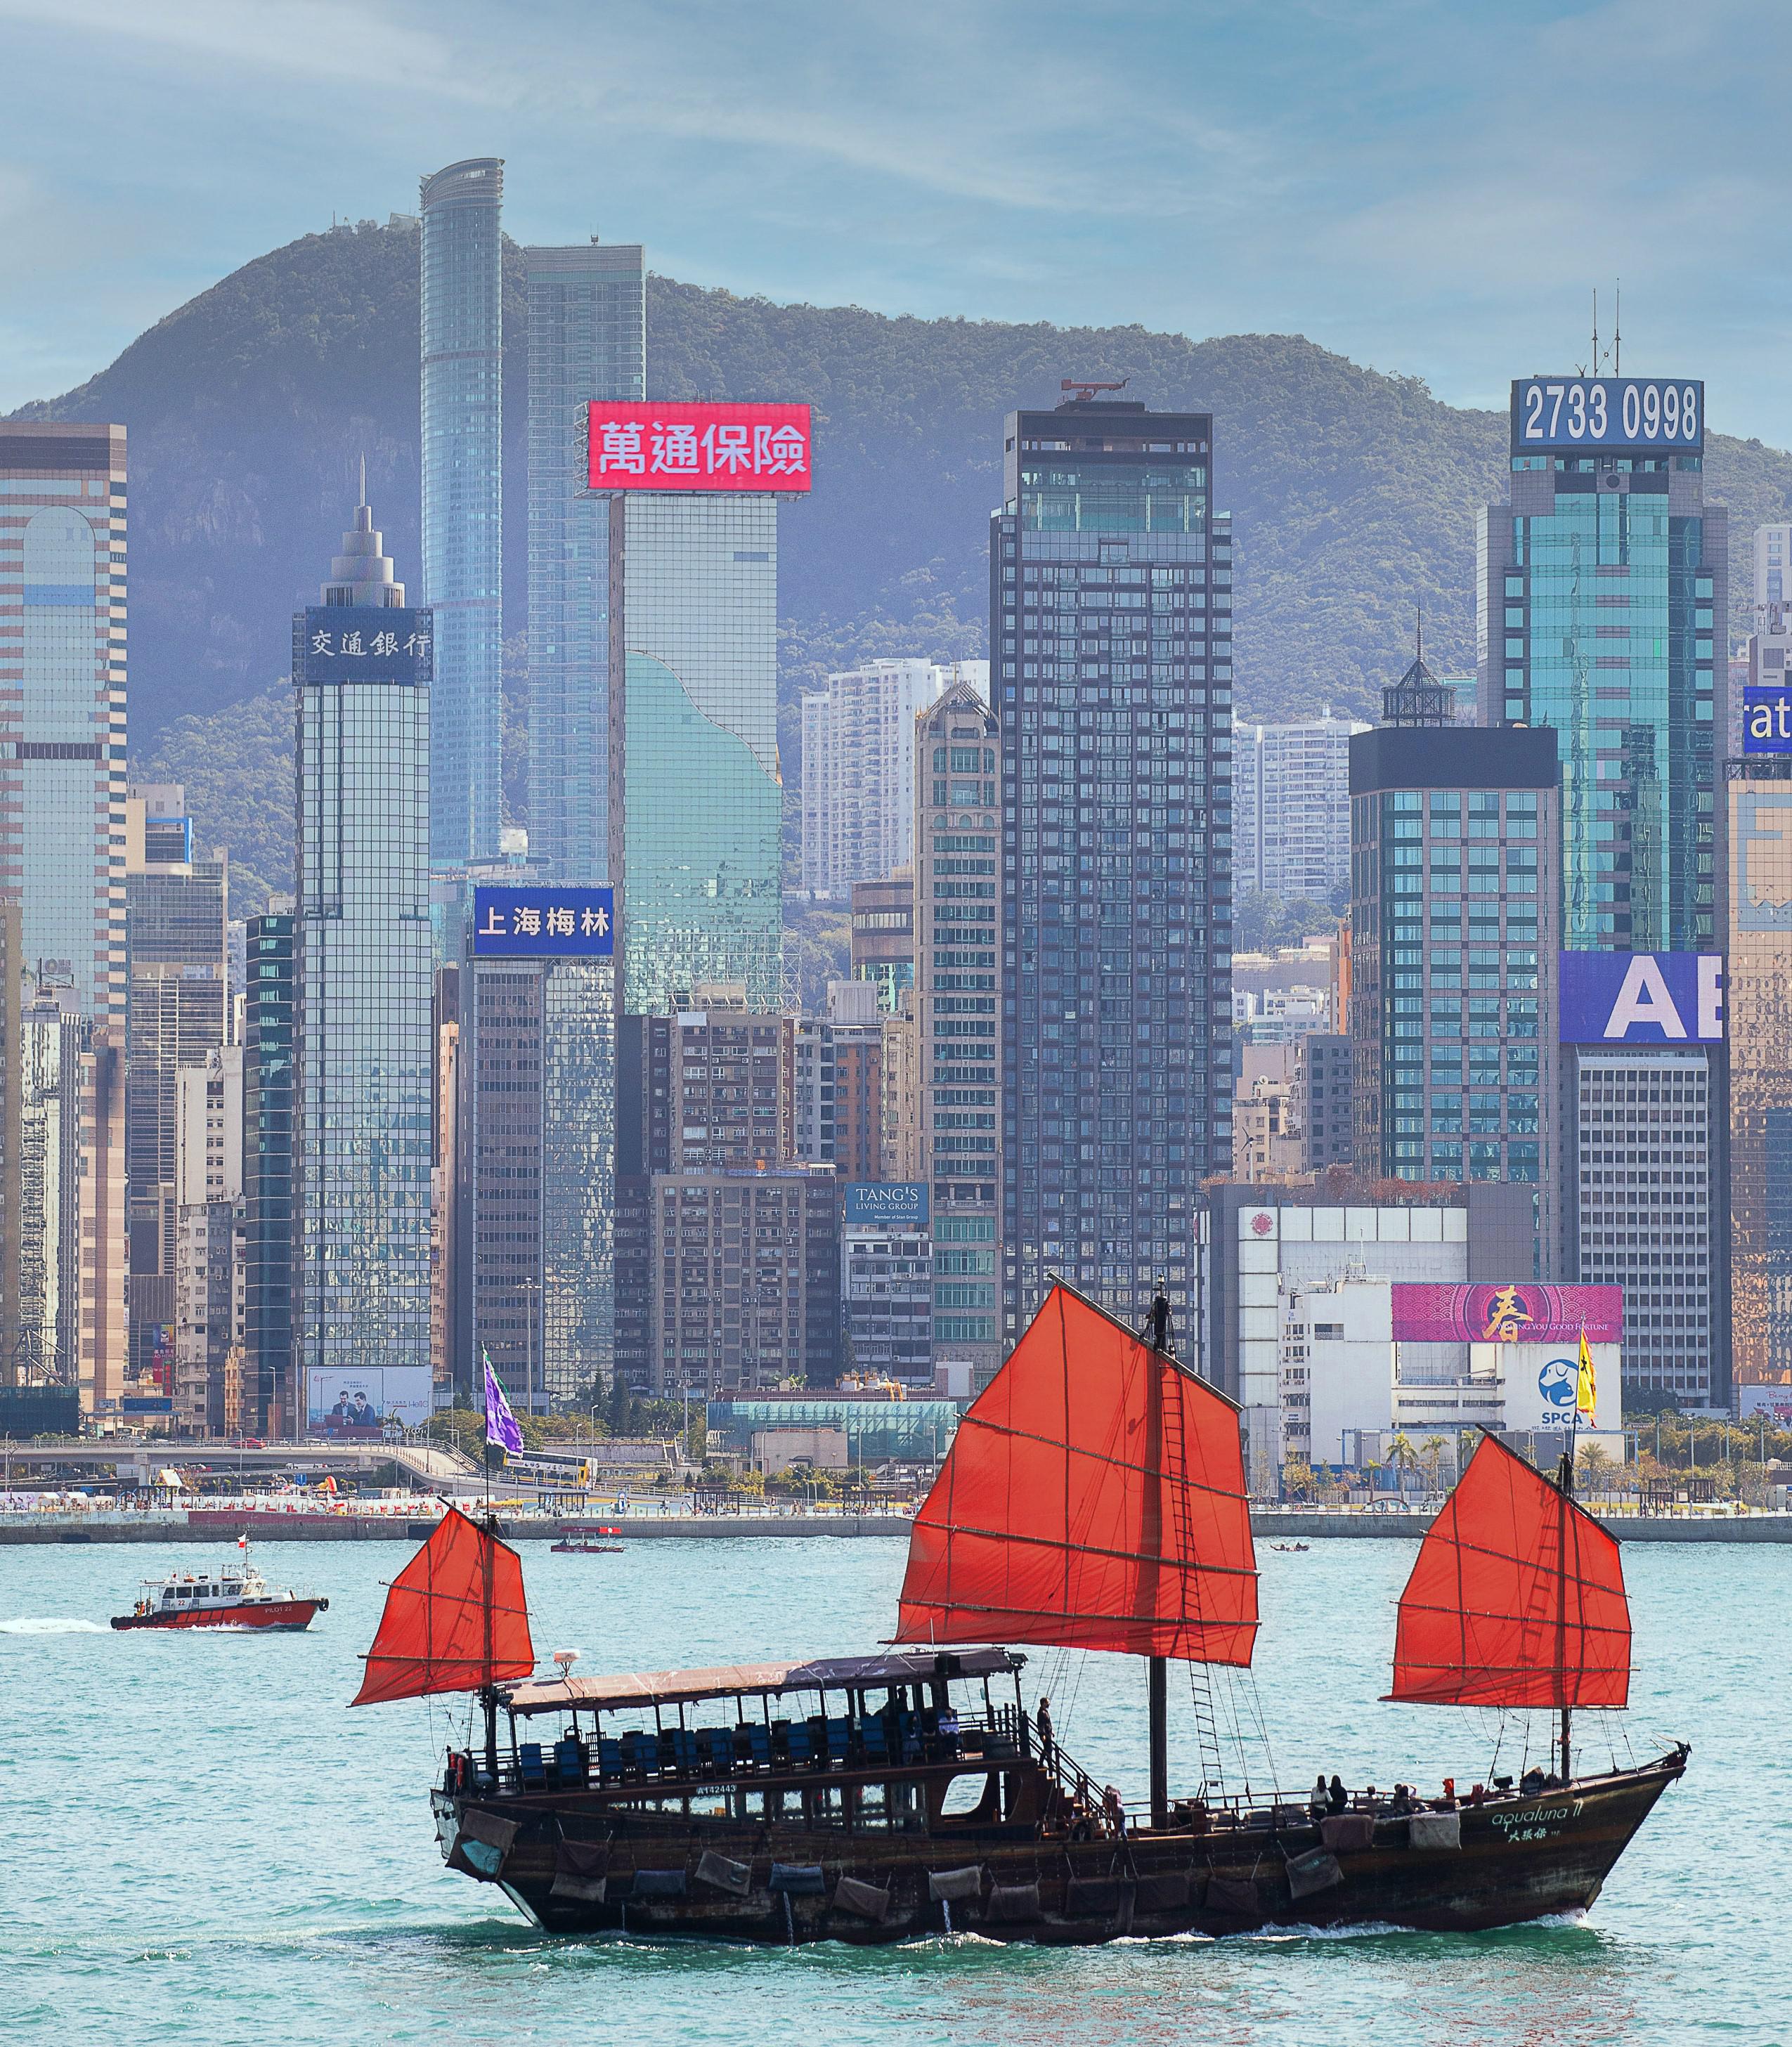 万通保险的大型楼顶LED屏寓意品牌对保险业和香港作出贡献的承诺。